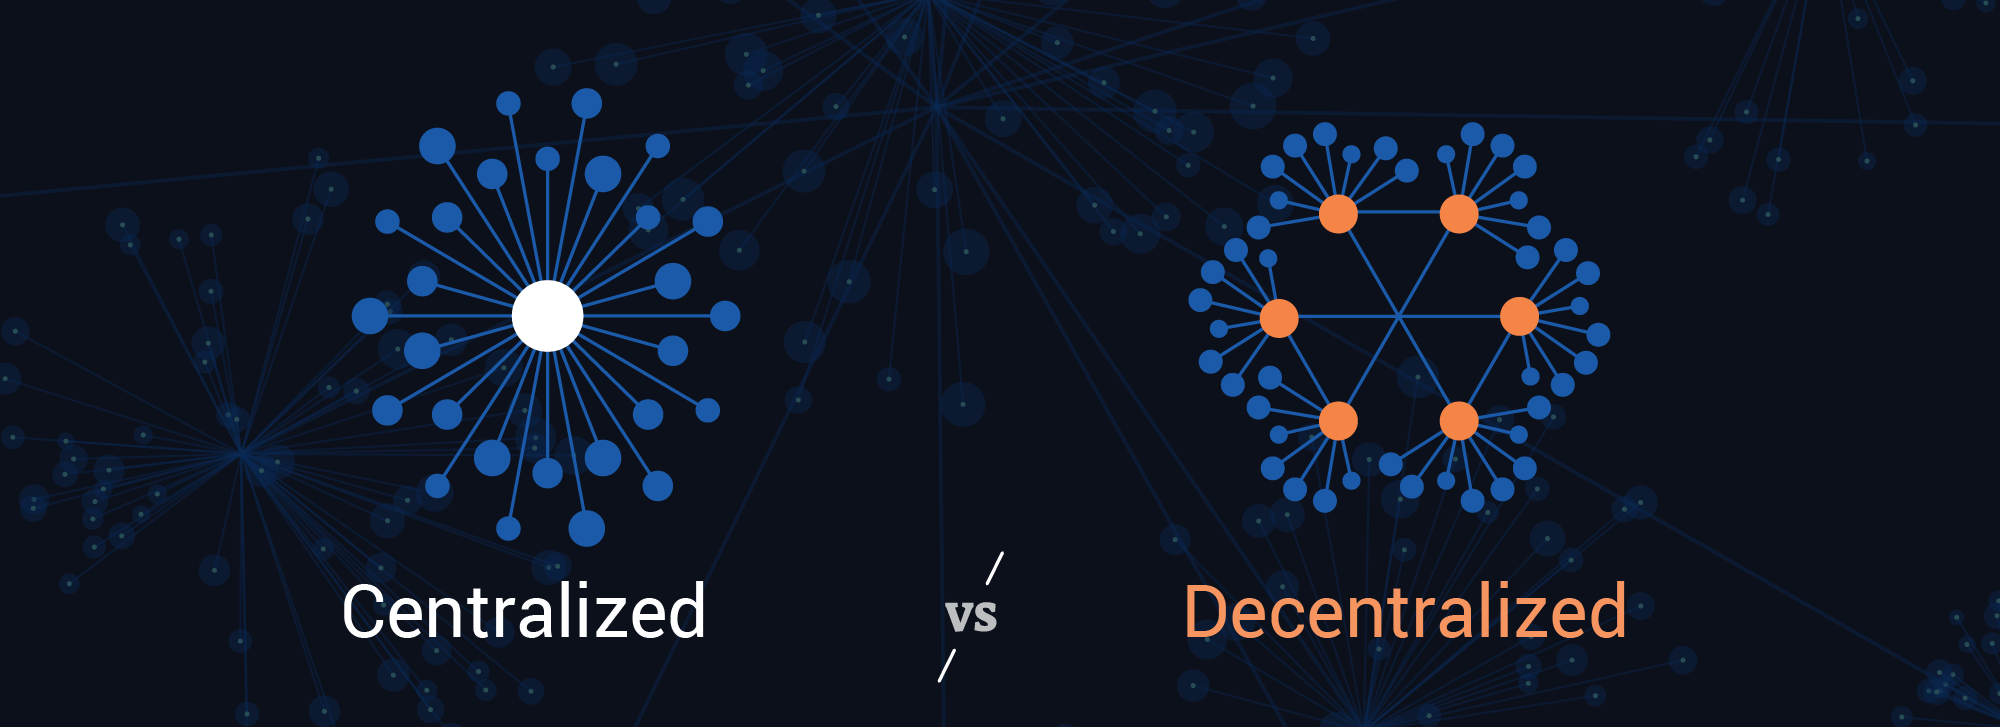 centralized vs decentralized data representation